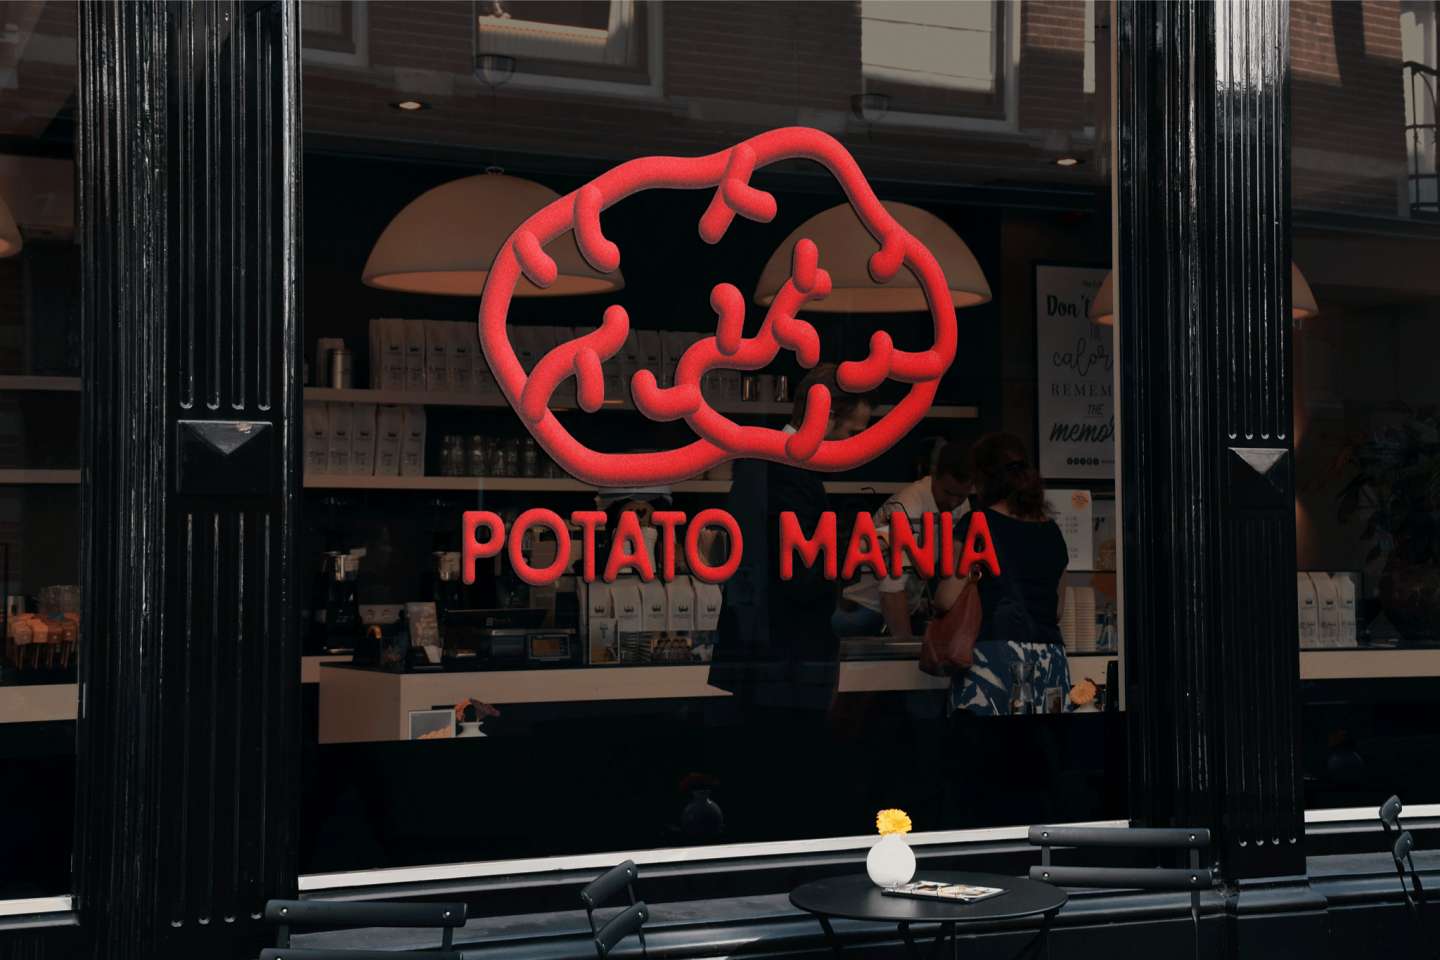   Potato Mania